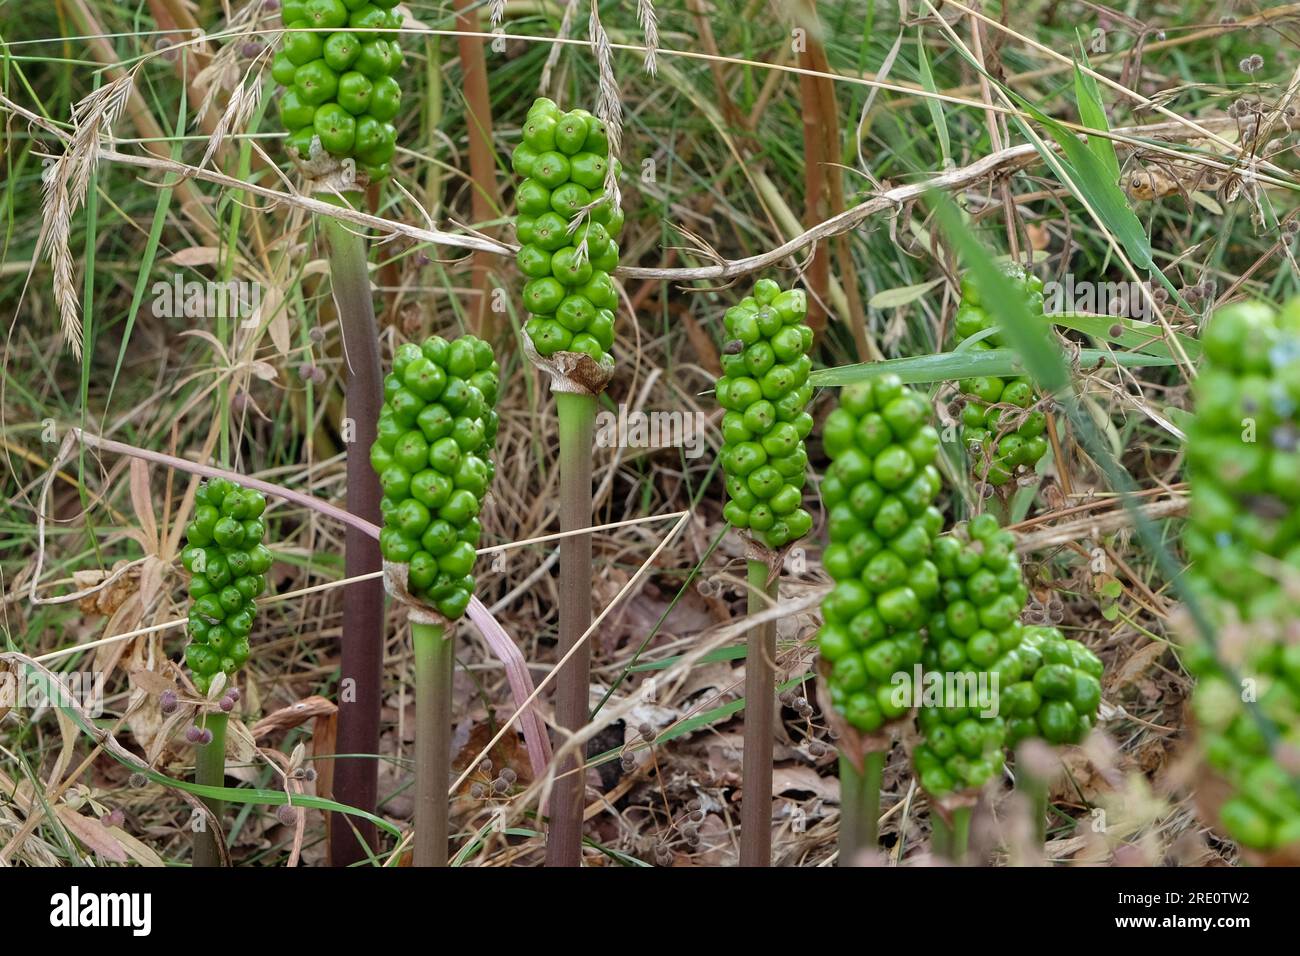 Arum italicum, or Italian arum, beginning to fruit. Stock Photo